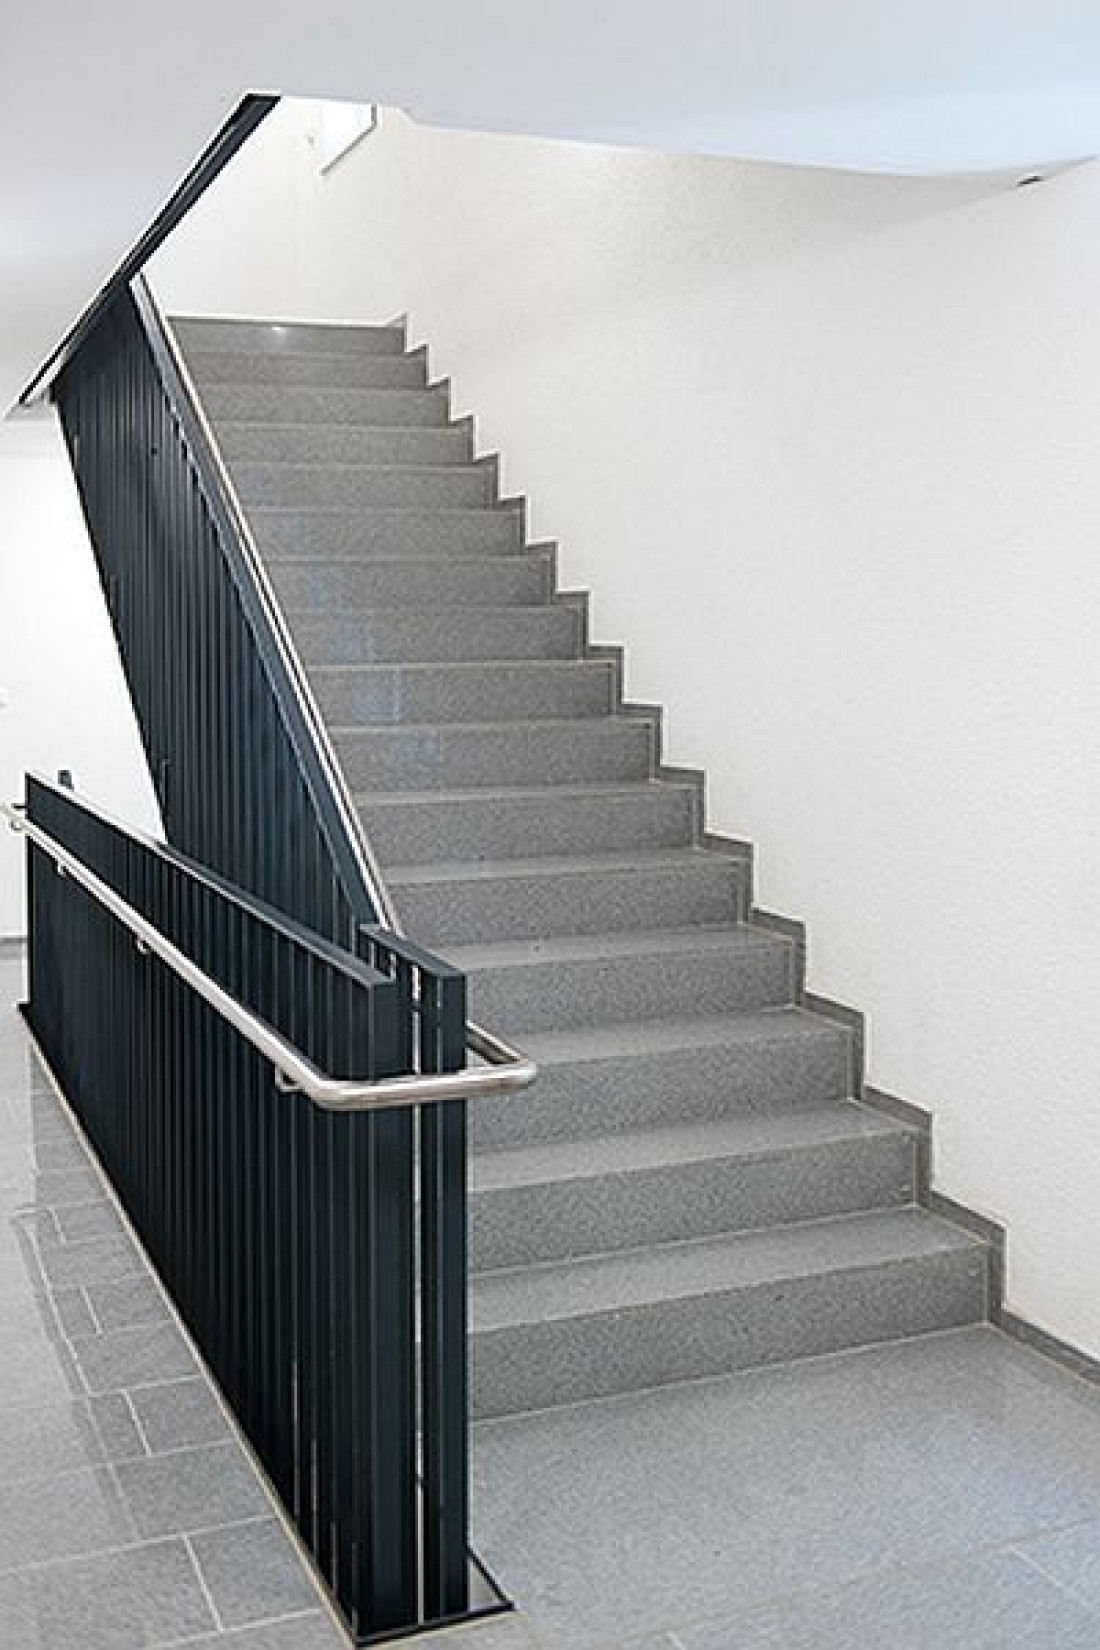 Schöck: Ochrona przeciwpożarowa klatek schodowych z systemem izolacji akustycznej